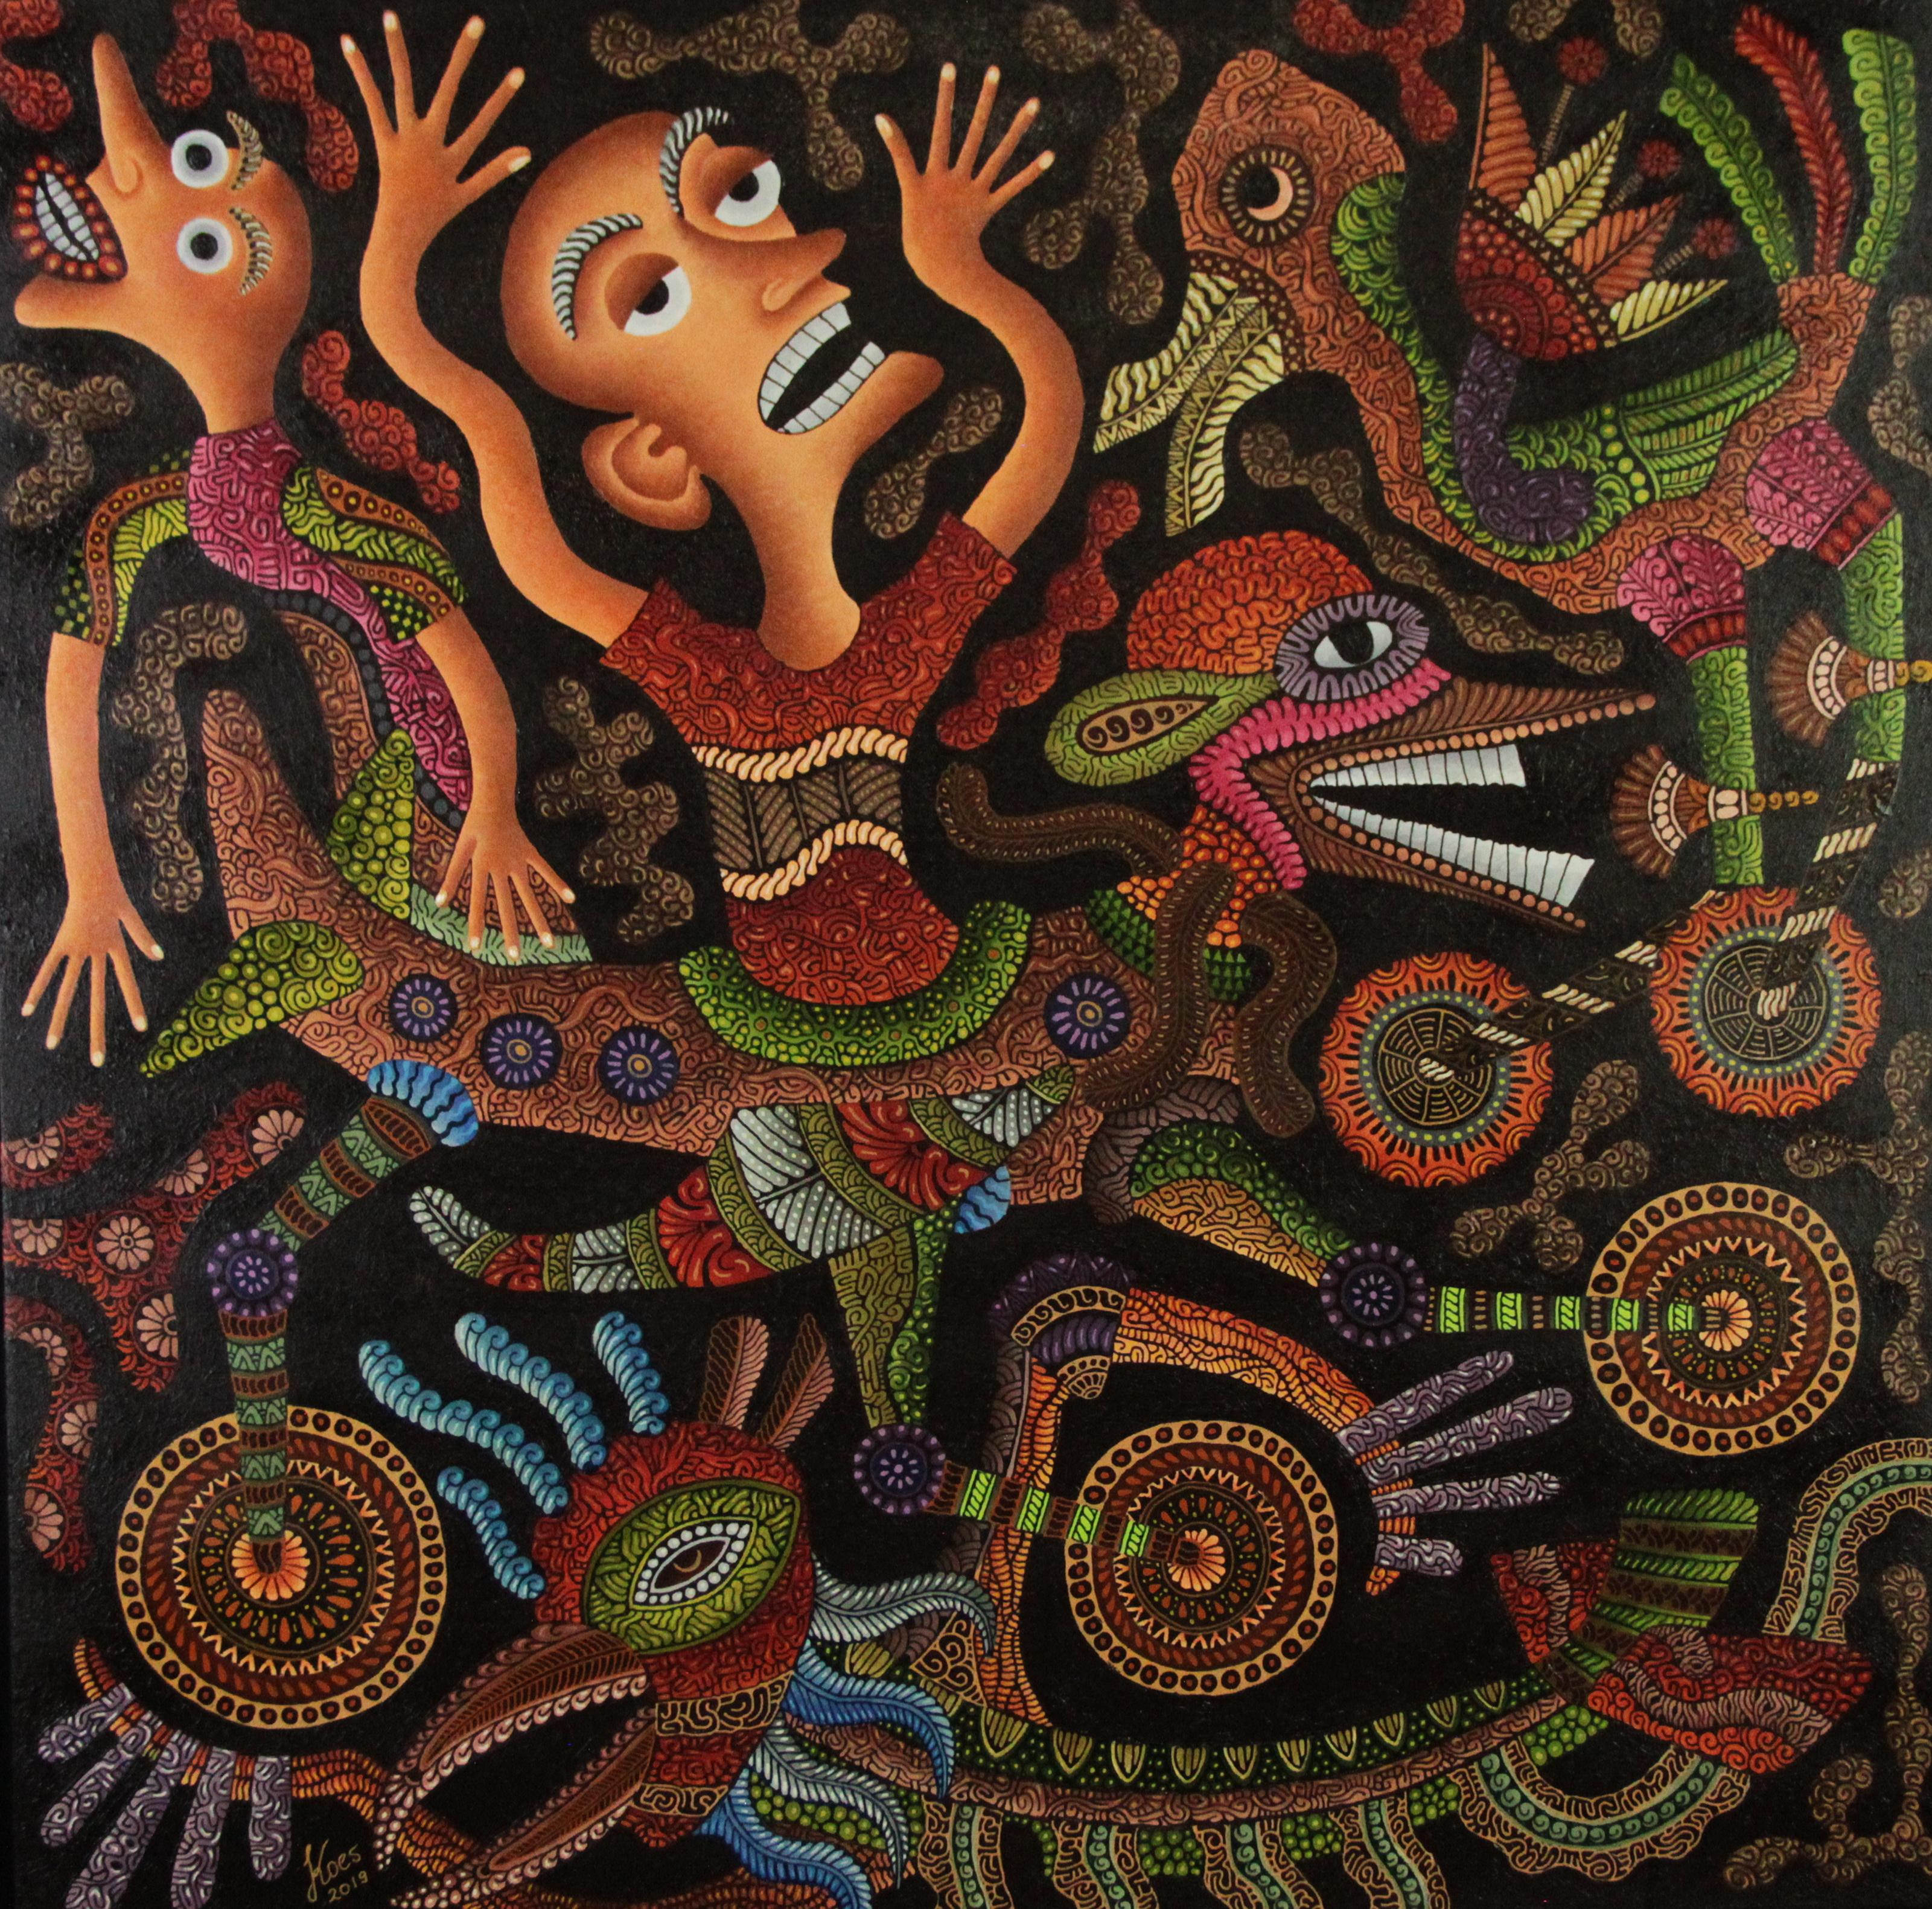 Kusbudiyanto est un artiste indonésien né en 1969 qui vit et travaille à Jogjakarta, en Indonésie.

Cette peinture raconte le rêve d'un enfant de voler et d'atteindre son rêve. Volez comme un oiseau et montez dans un avion tous les jours. Parce